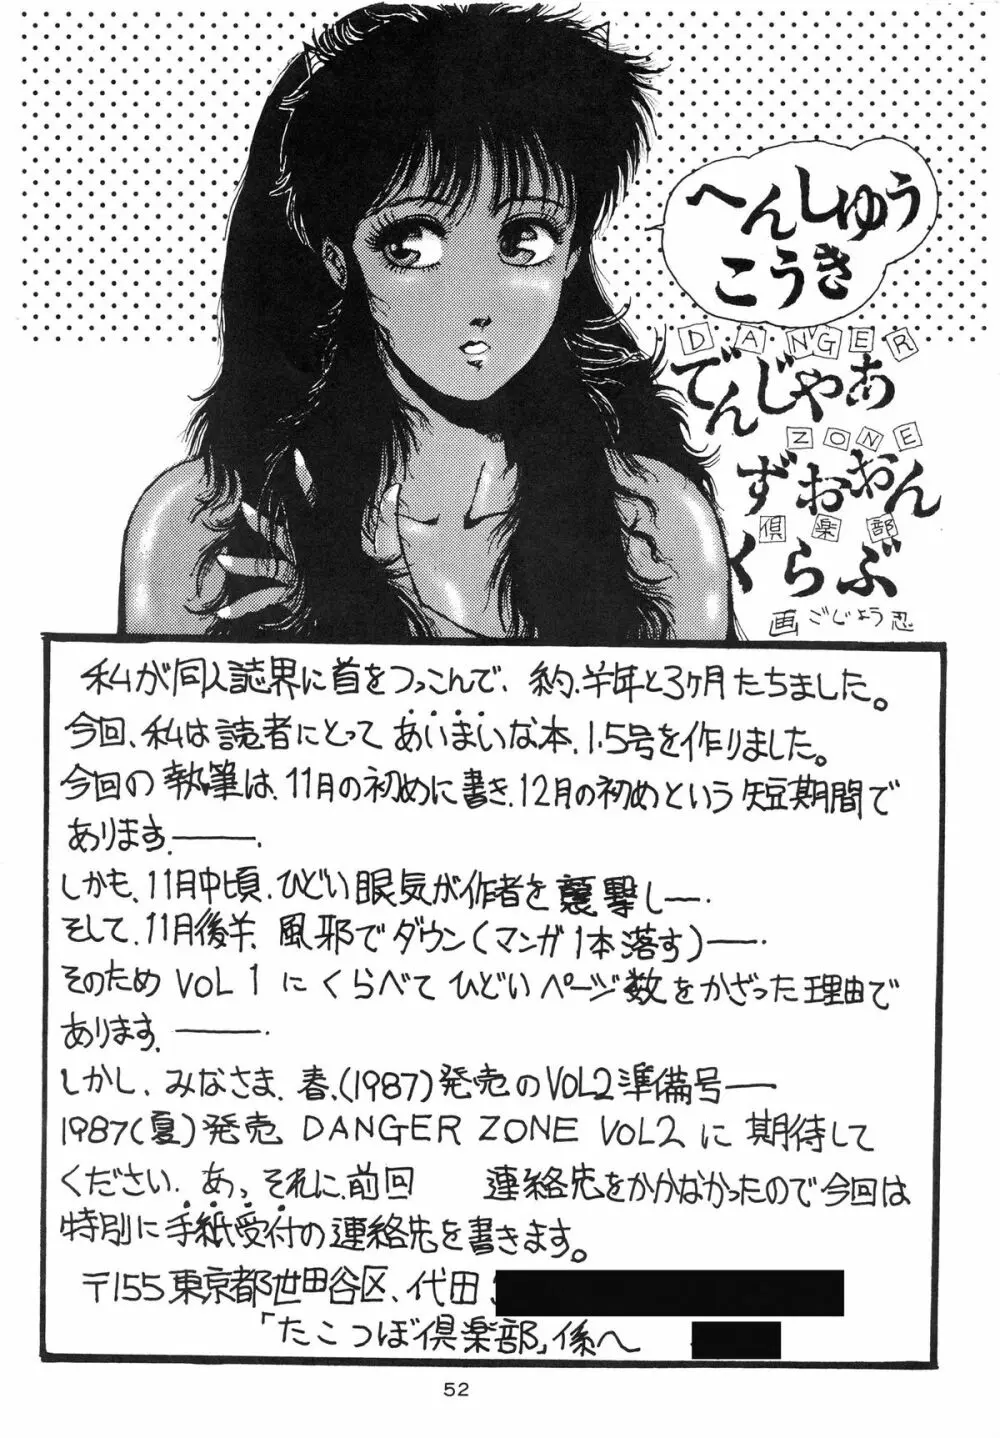 DANGER ZONE Vol.1.5 52ページ